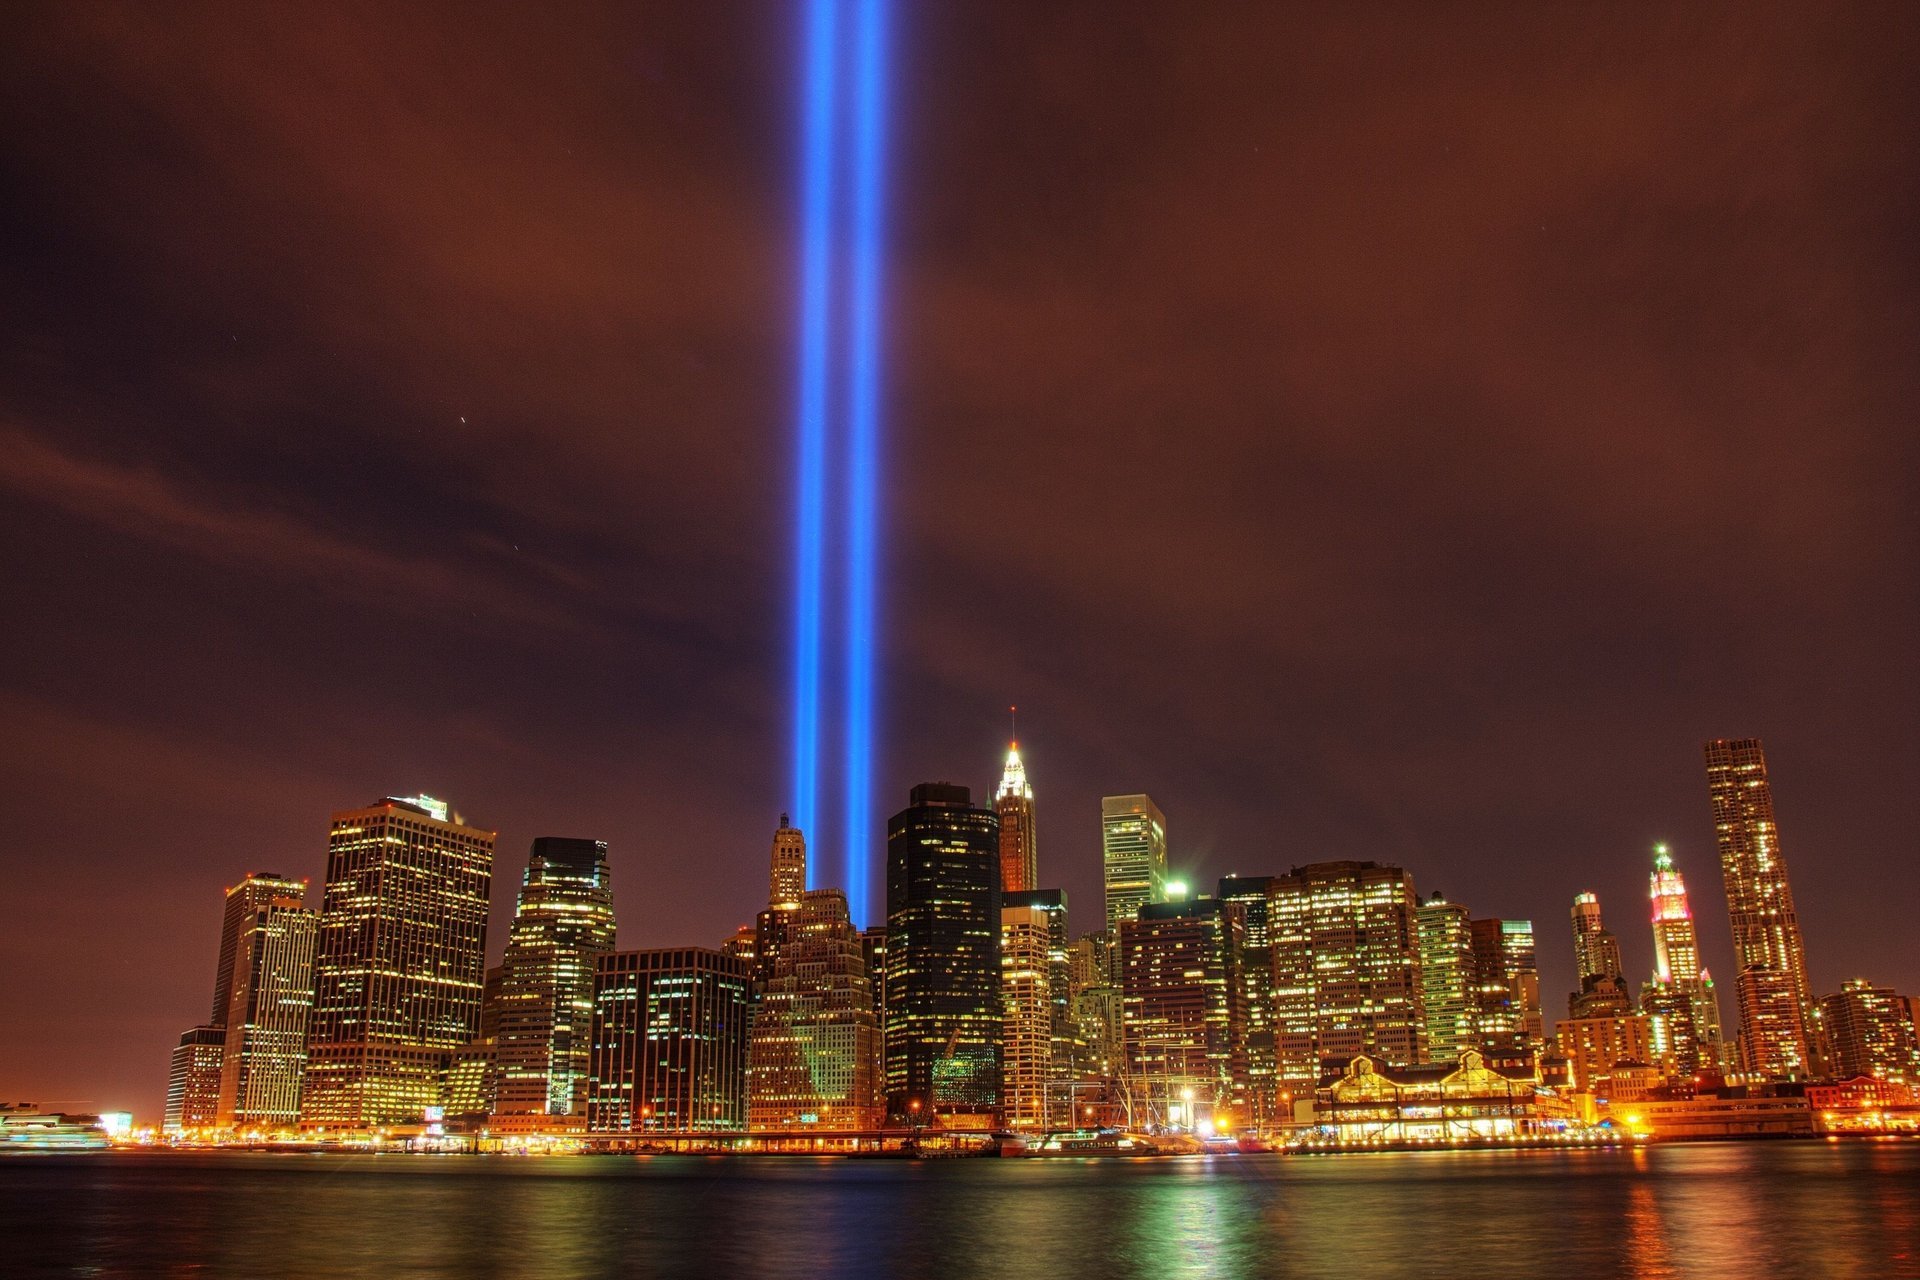 Нью-Йорк, в память о трагедии 11 сентября. Башни близнецы